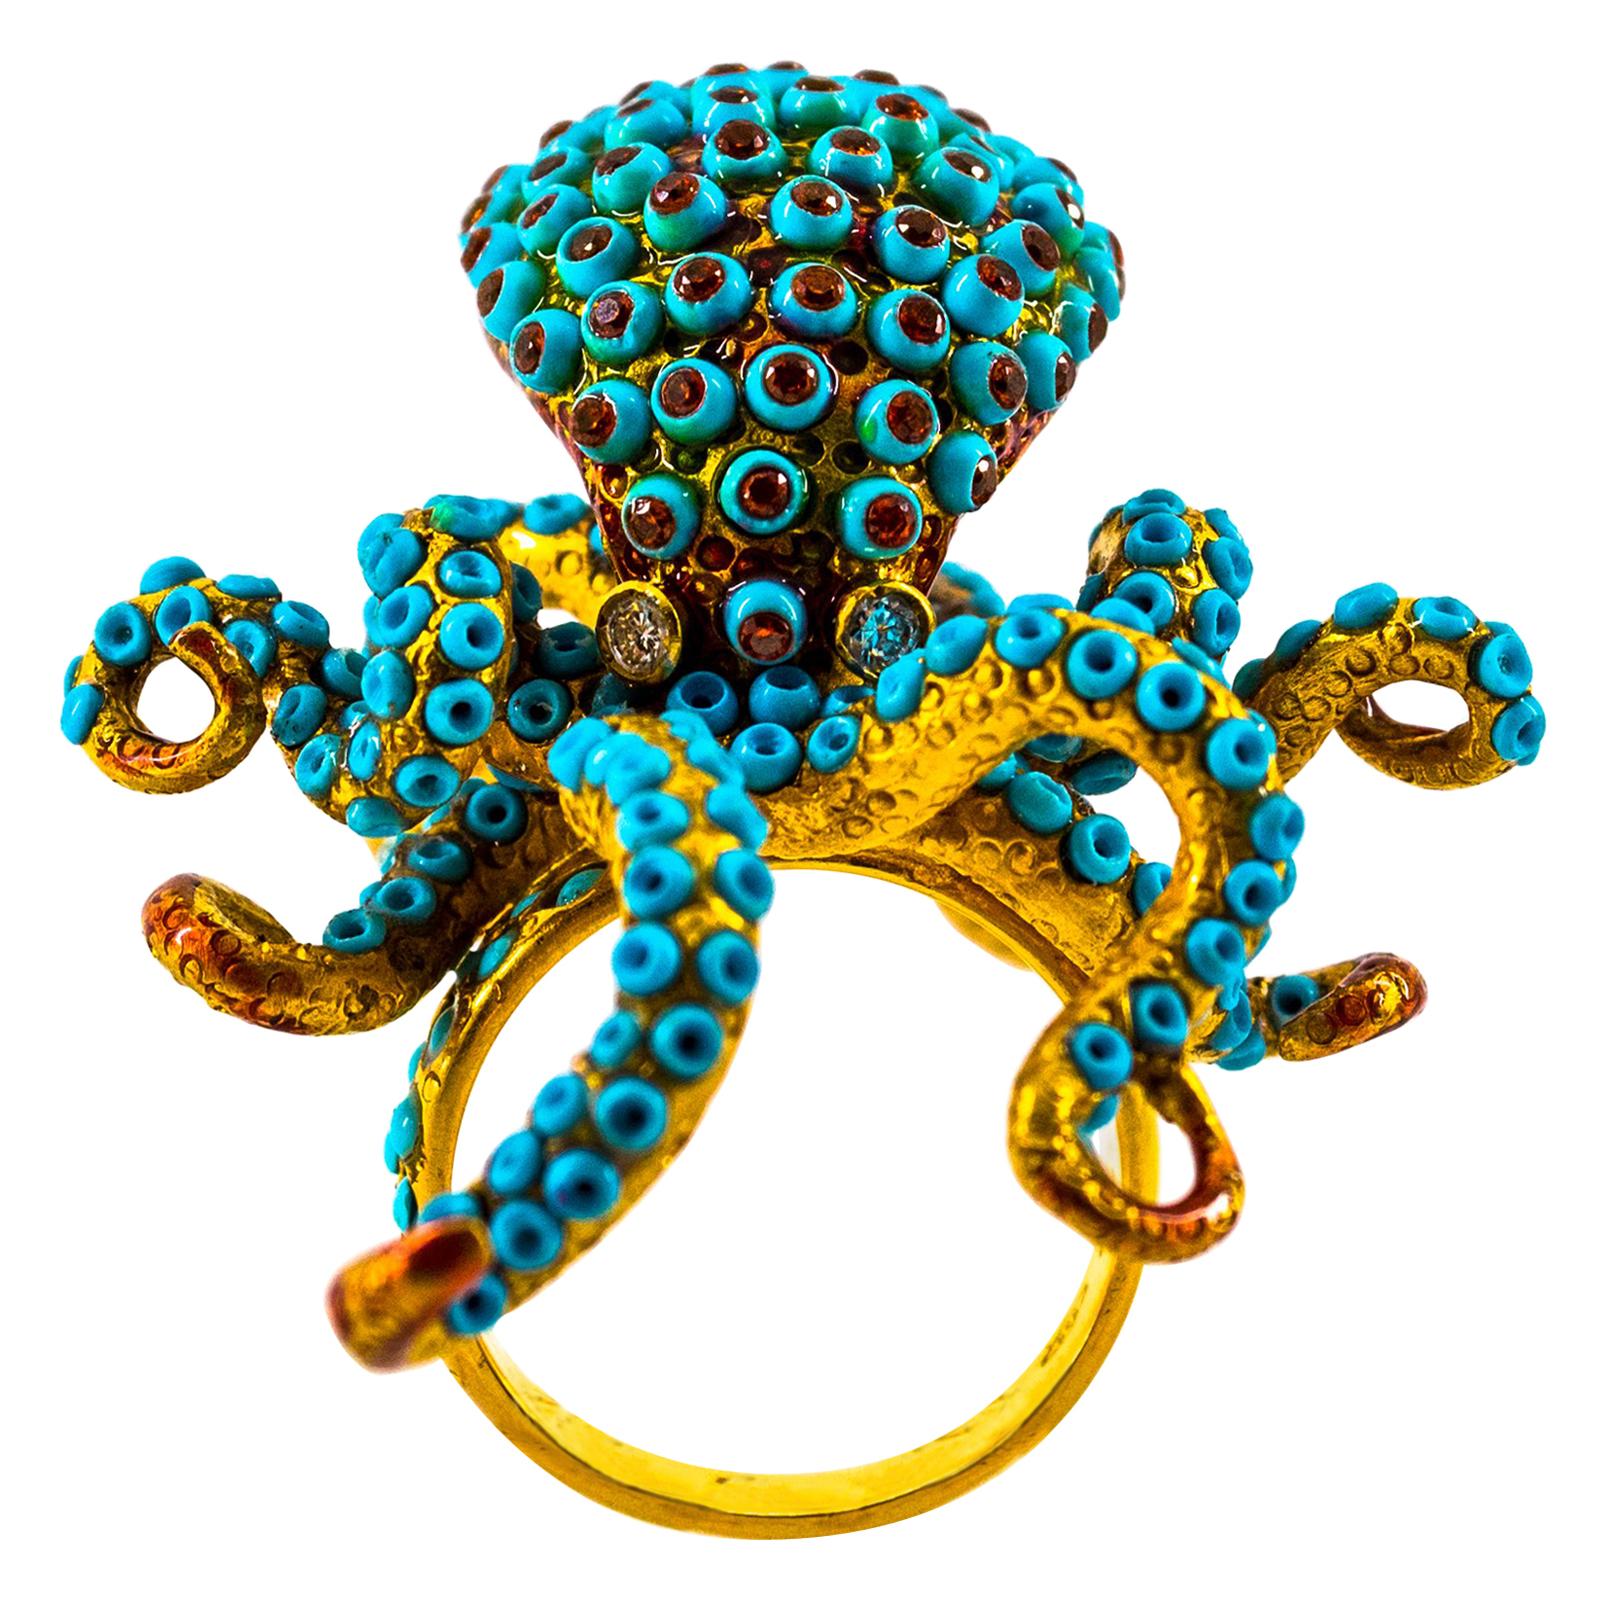 1.12 Carat White Diamond Garnet Turquoise Yellow Gold "Octopus" Cocktail Ring